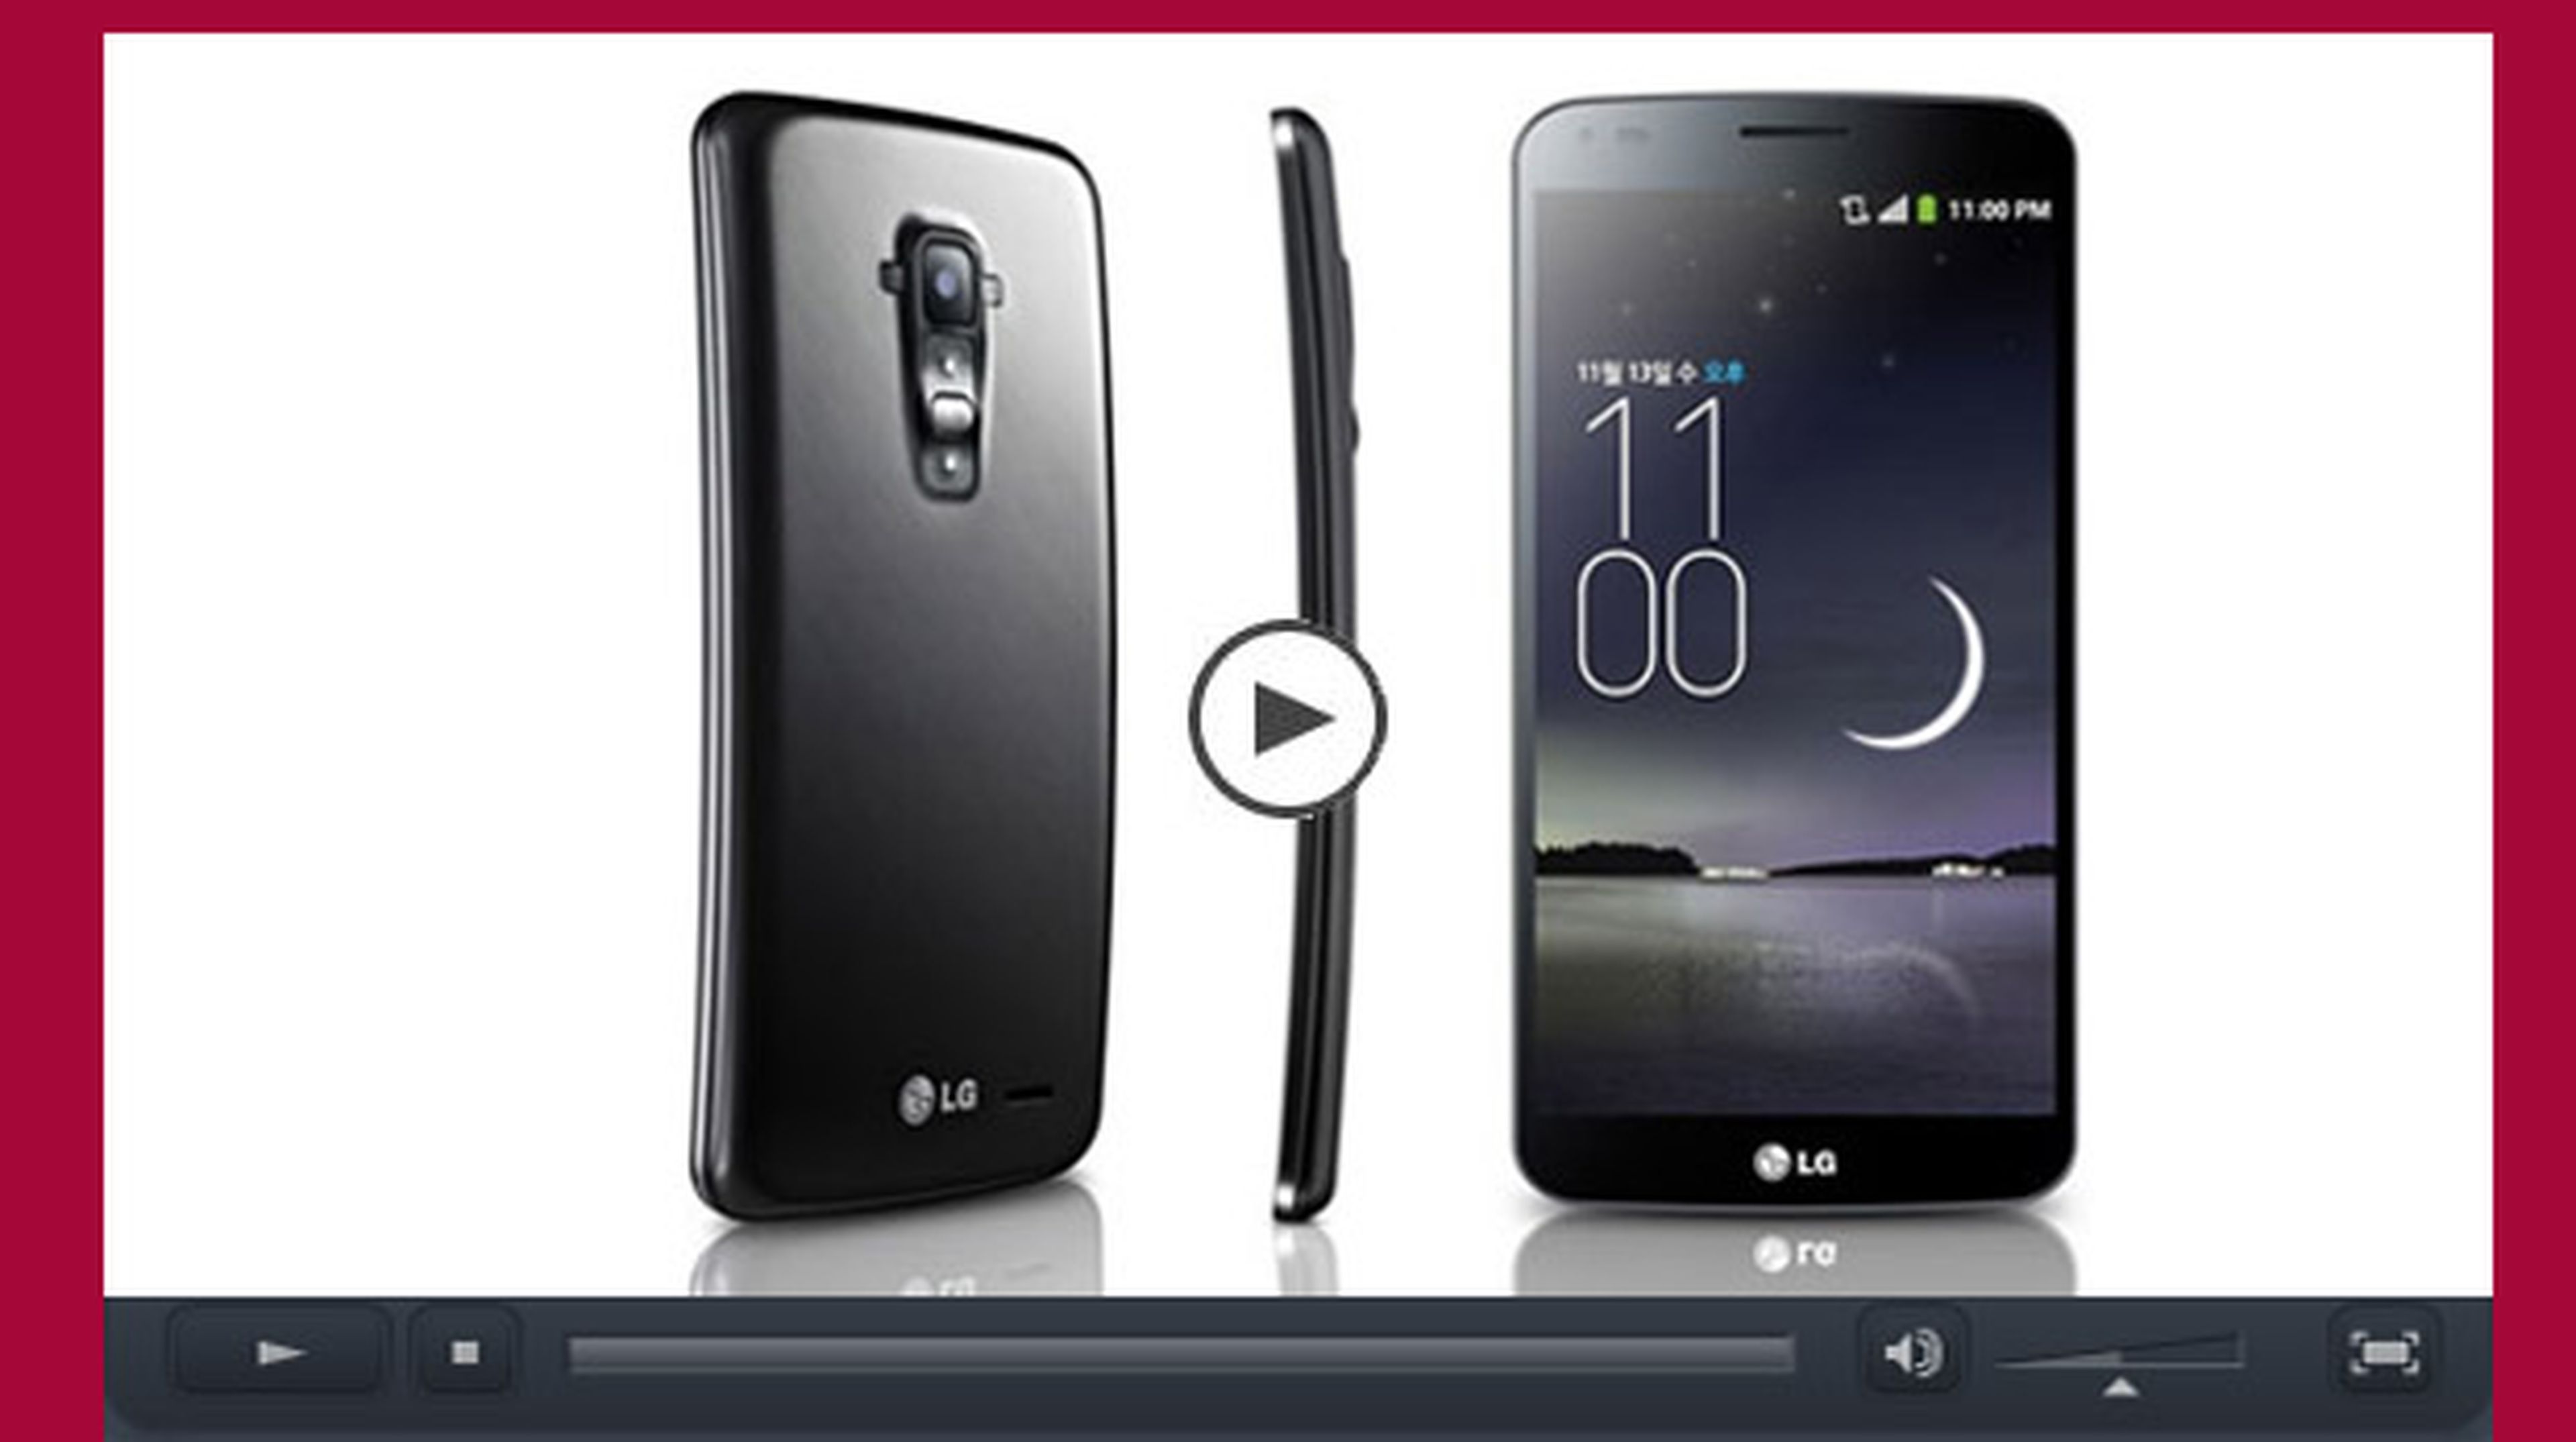 Vídeo del LG G Flex, el primer smartphone que se autorepara (vídeo)